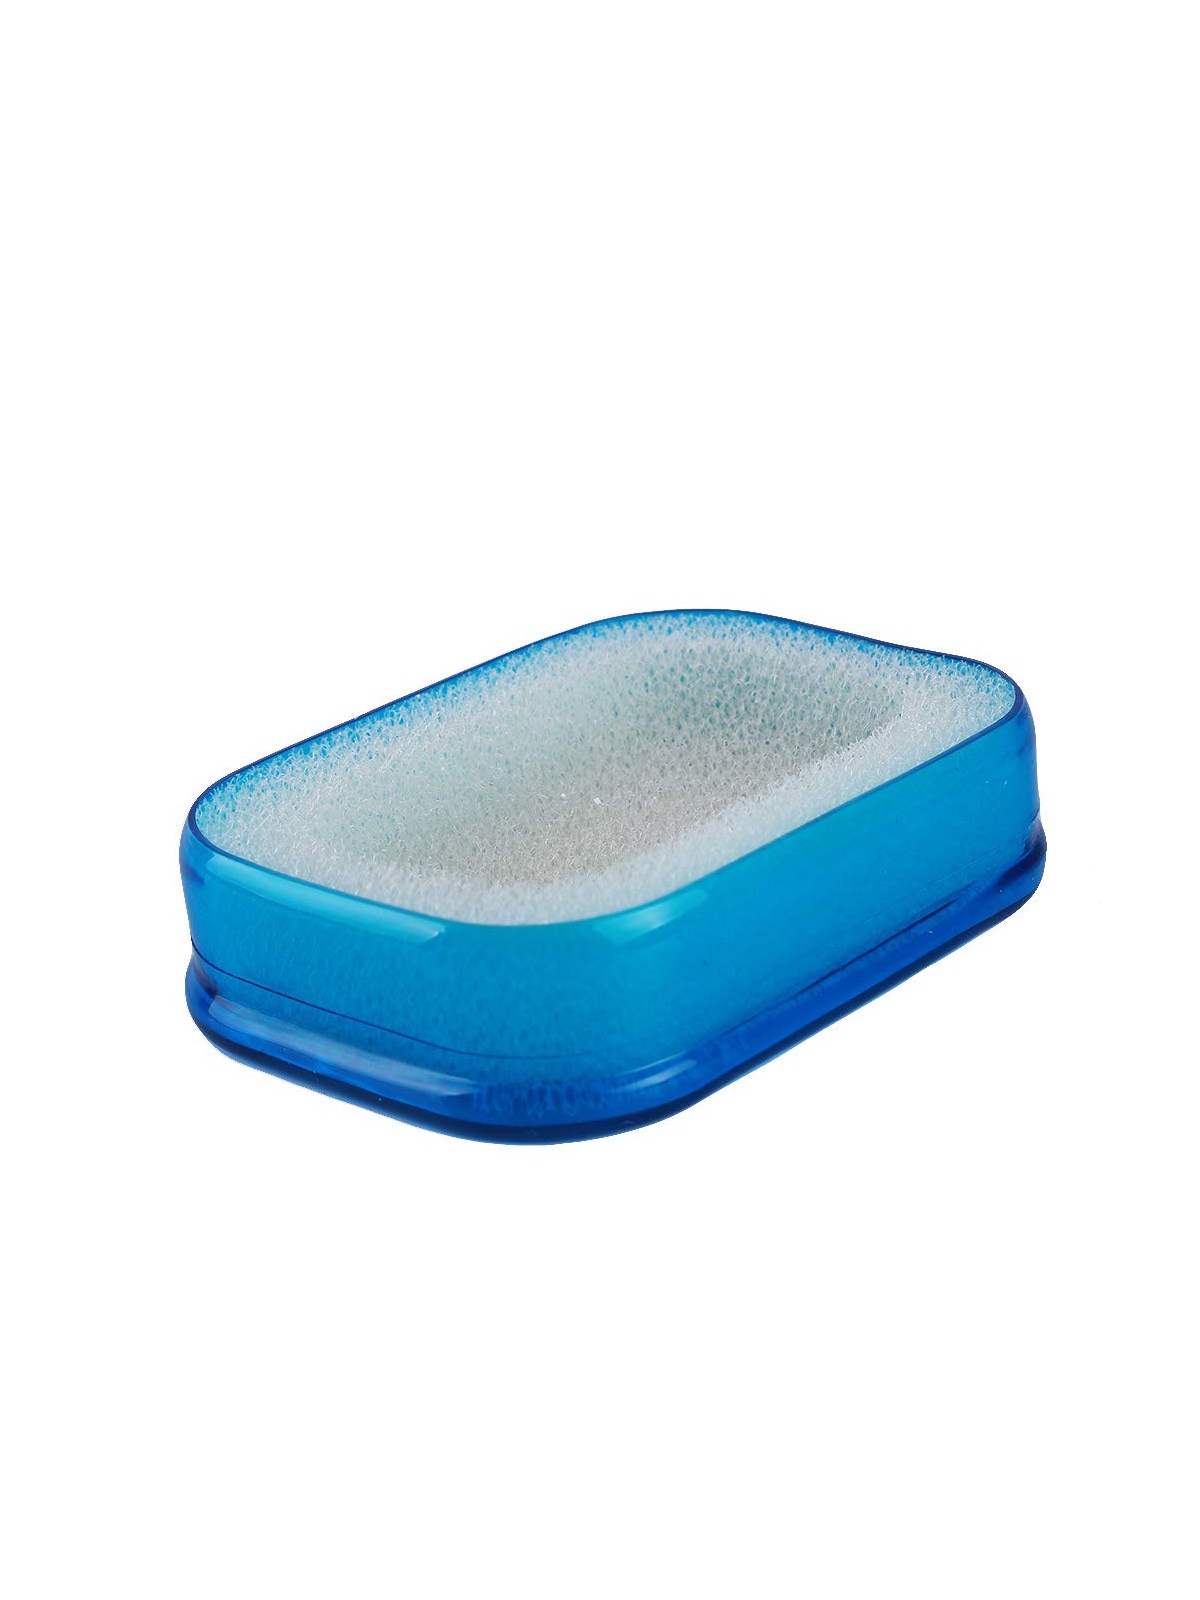 Мультифункциональная губка мыльница в пластиковой коробке, мыльница с губкой поролоновой (син.)